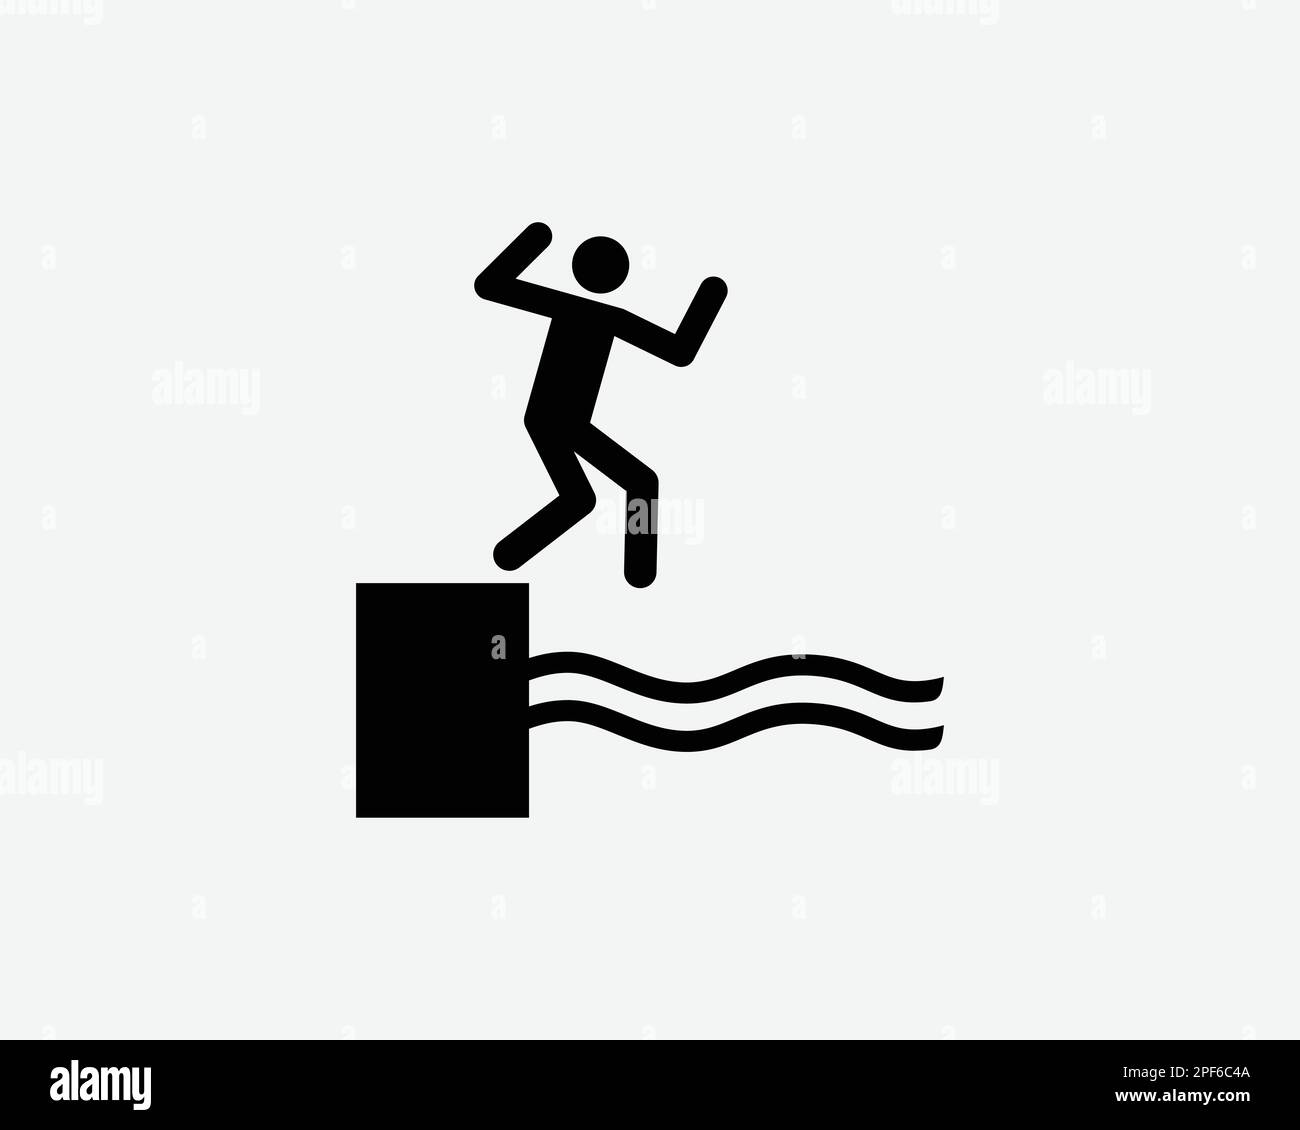 Cliff Diving Icon Dive Leap Jump Jumping in acqua Pool Deck Vector Black White Silhouette simbolo segno grafico clipart illustrazione pittogramma Illustrazione Vettoriale